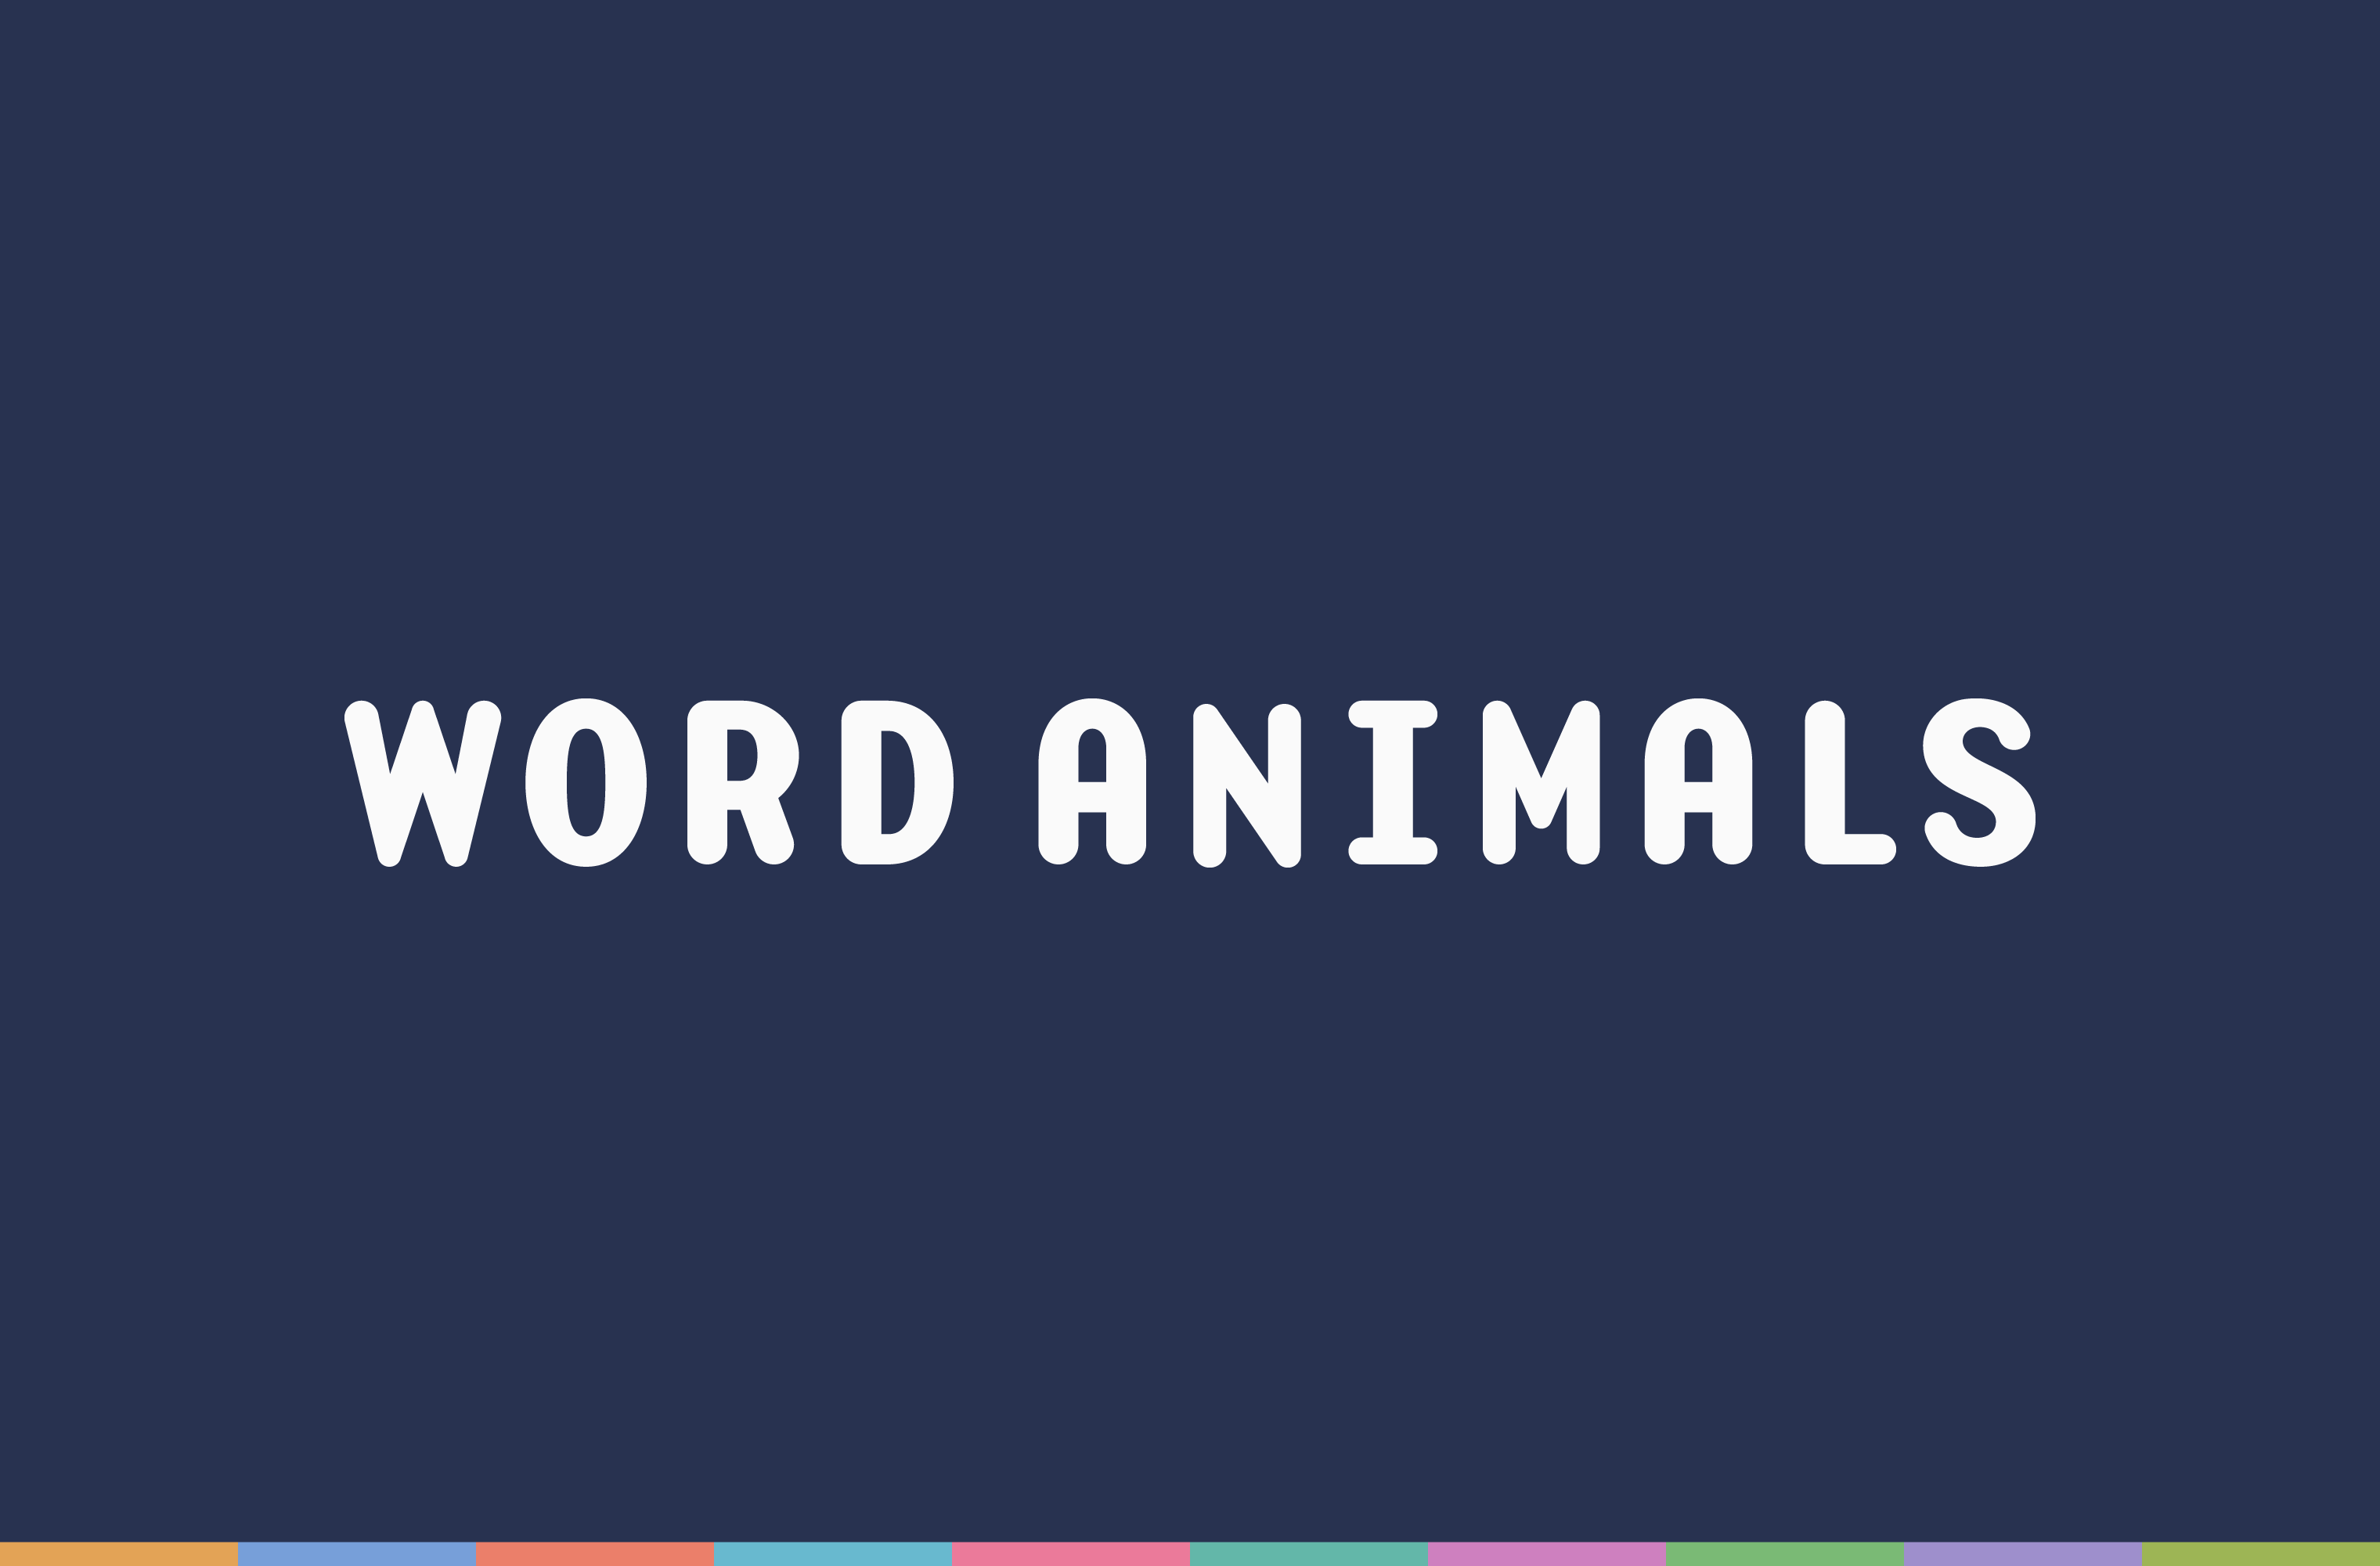 White Word Animals wordmark on a blue background